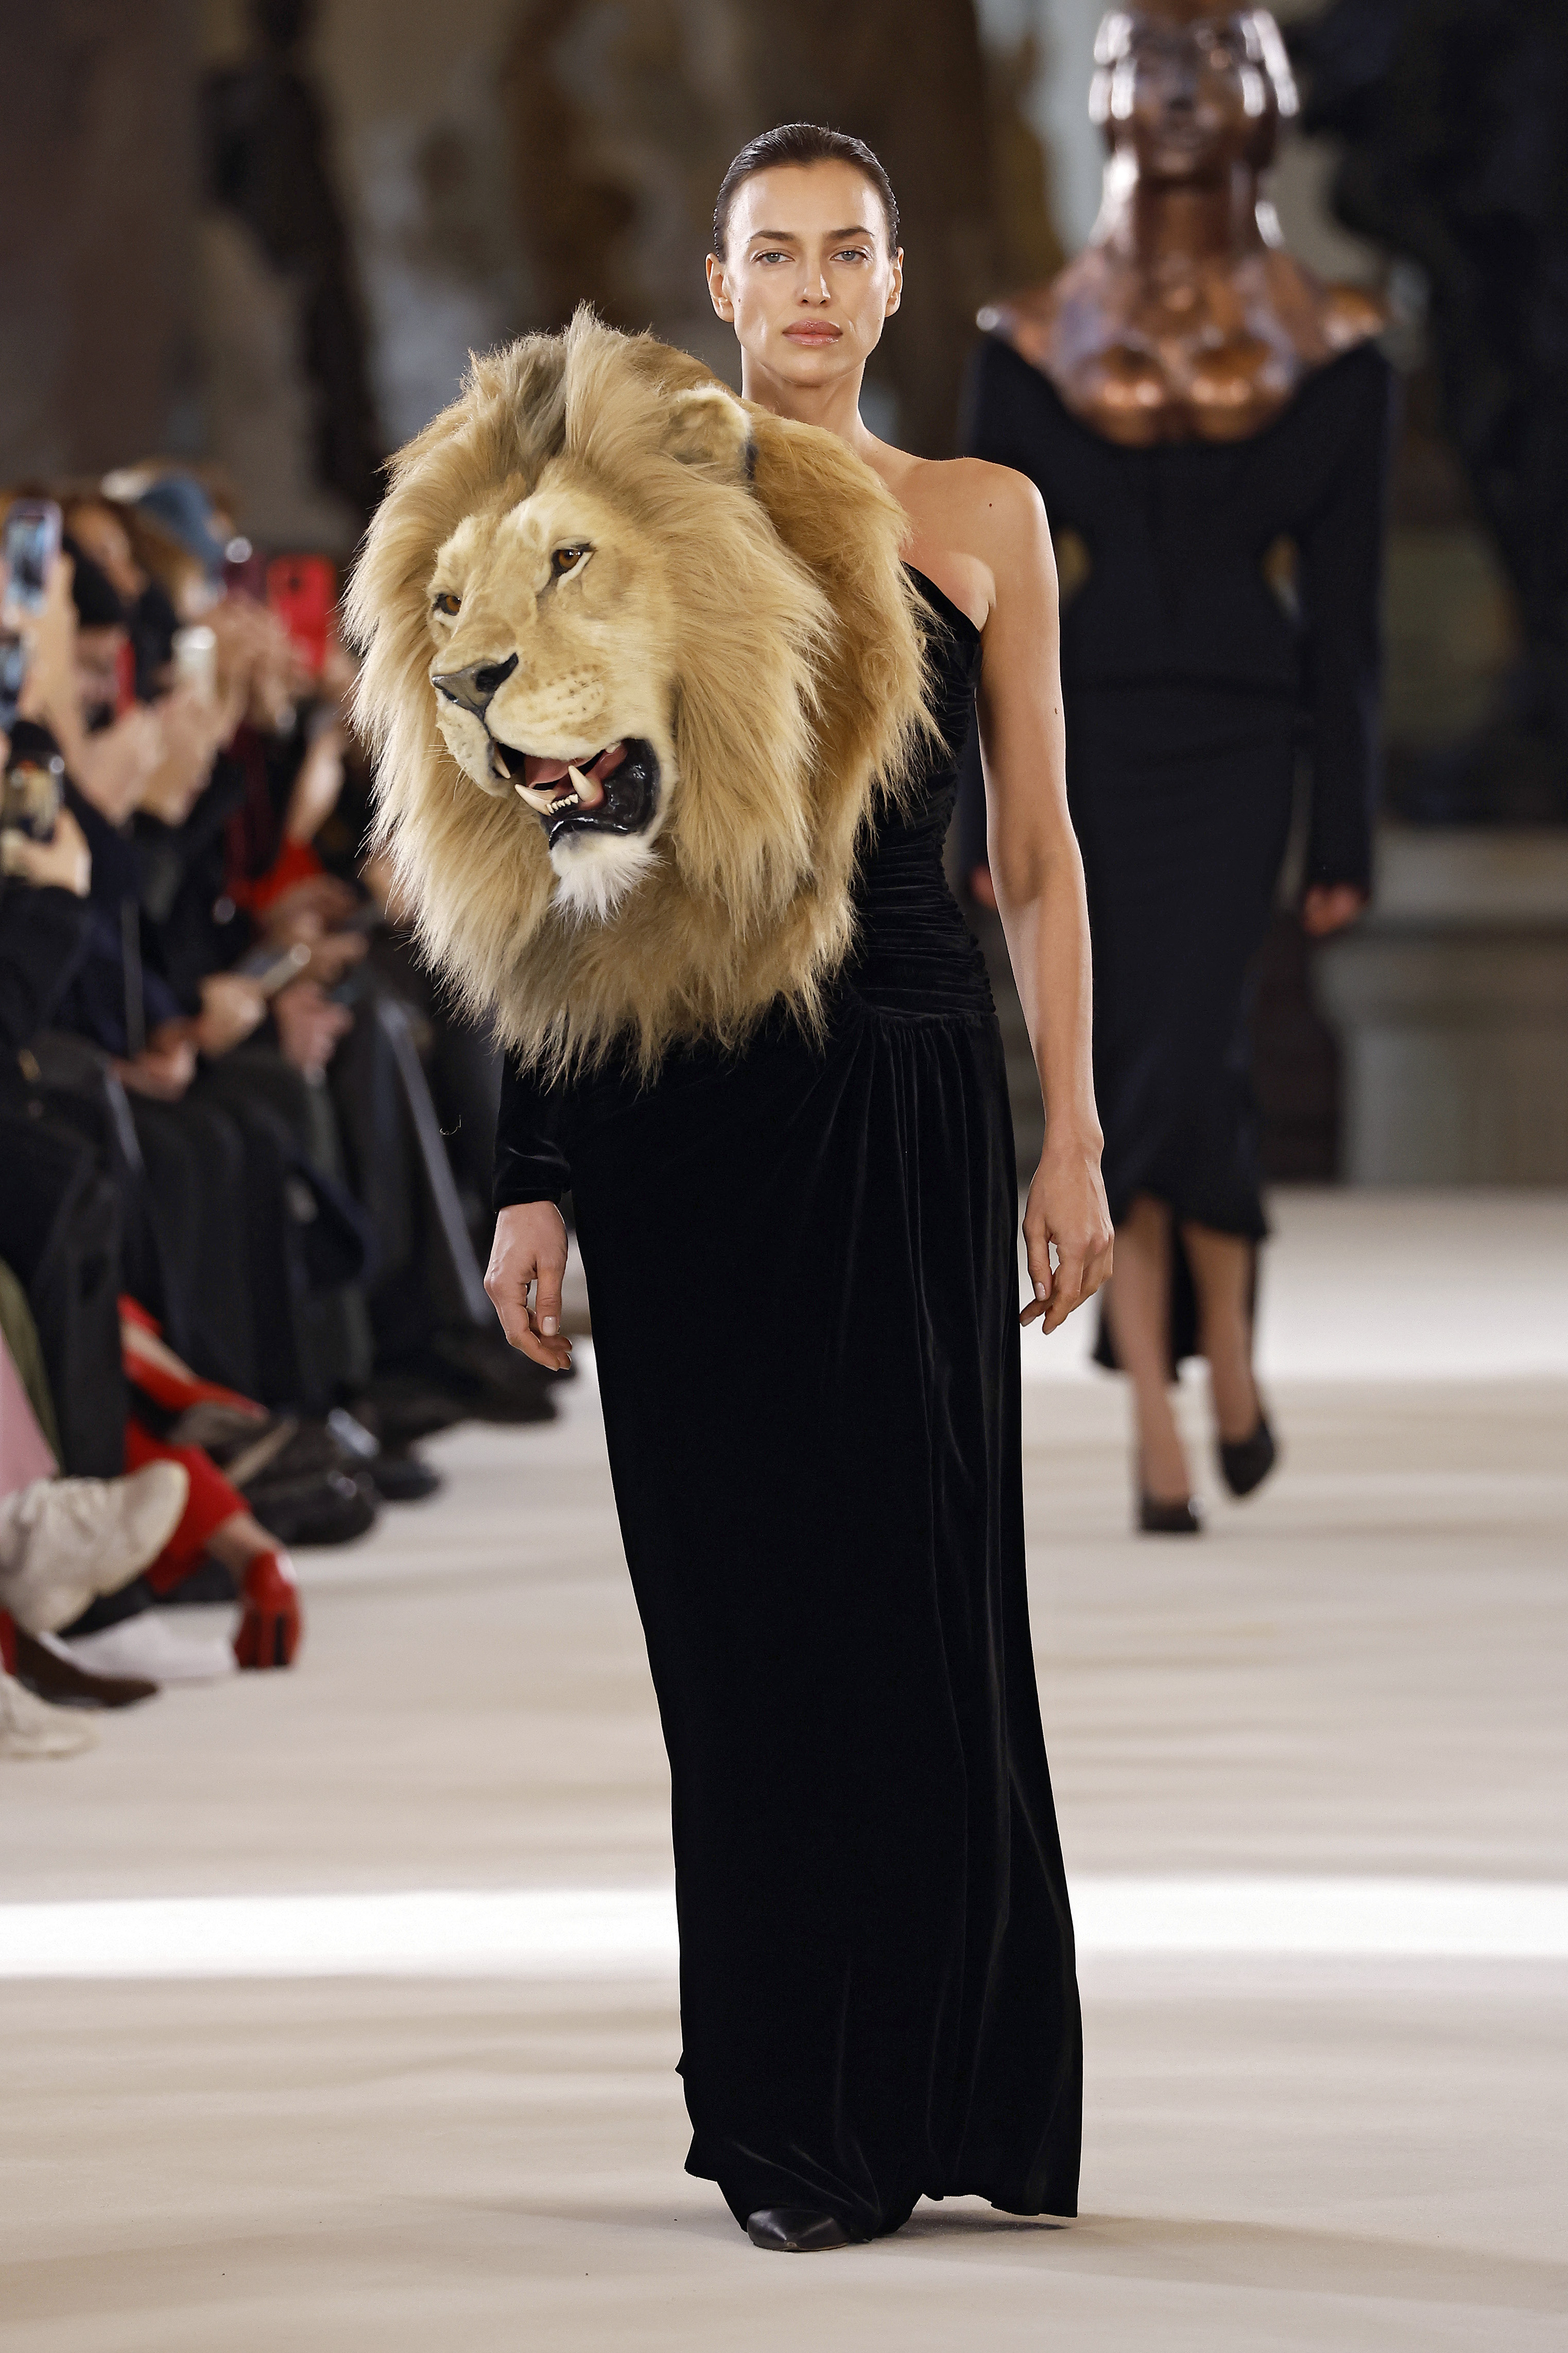 Modelo Irina Shayk desfilando para a Schiaparelli na semana de alta-costura 2023 em Paris com vestido longo preto que possui cabeça de leão